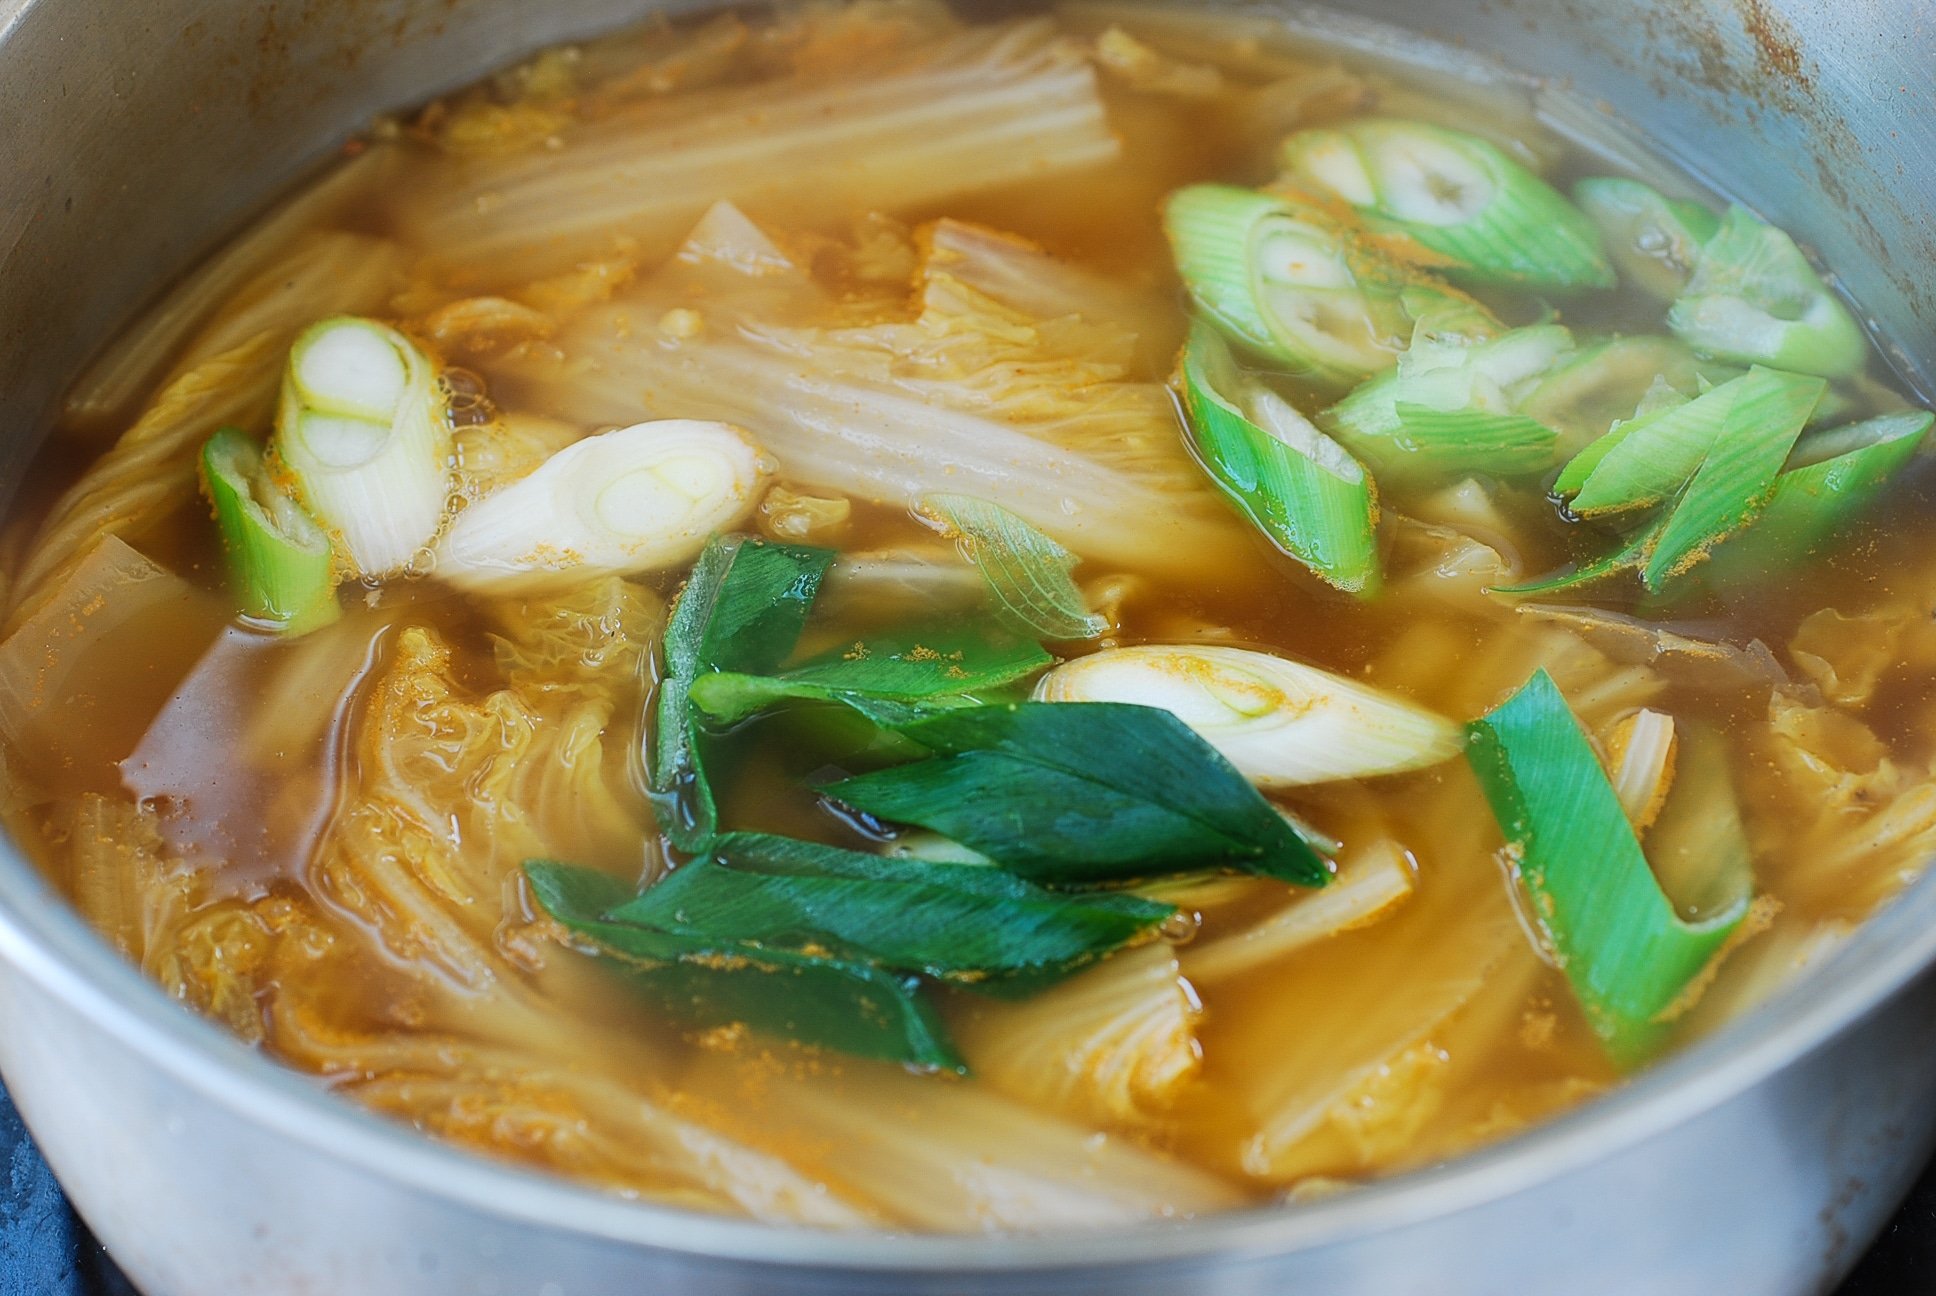 DSC 1809 - Baechu Doenjang Guk (Soybean Paste Soup)